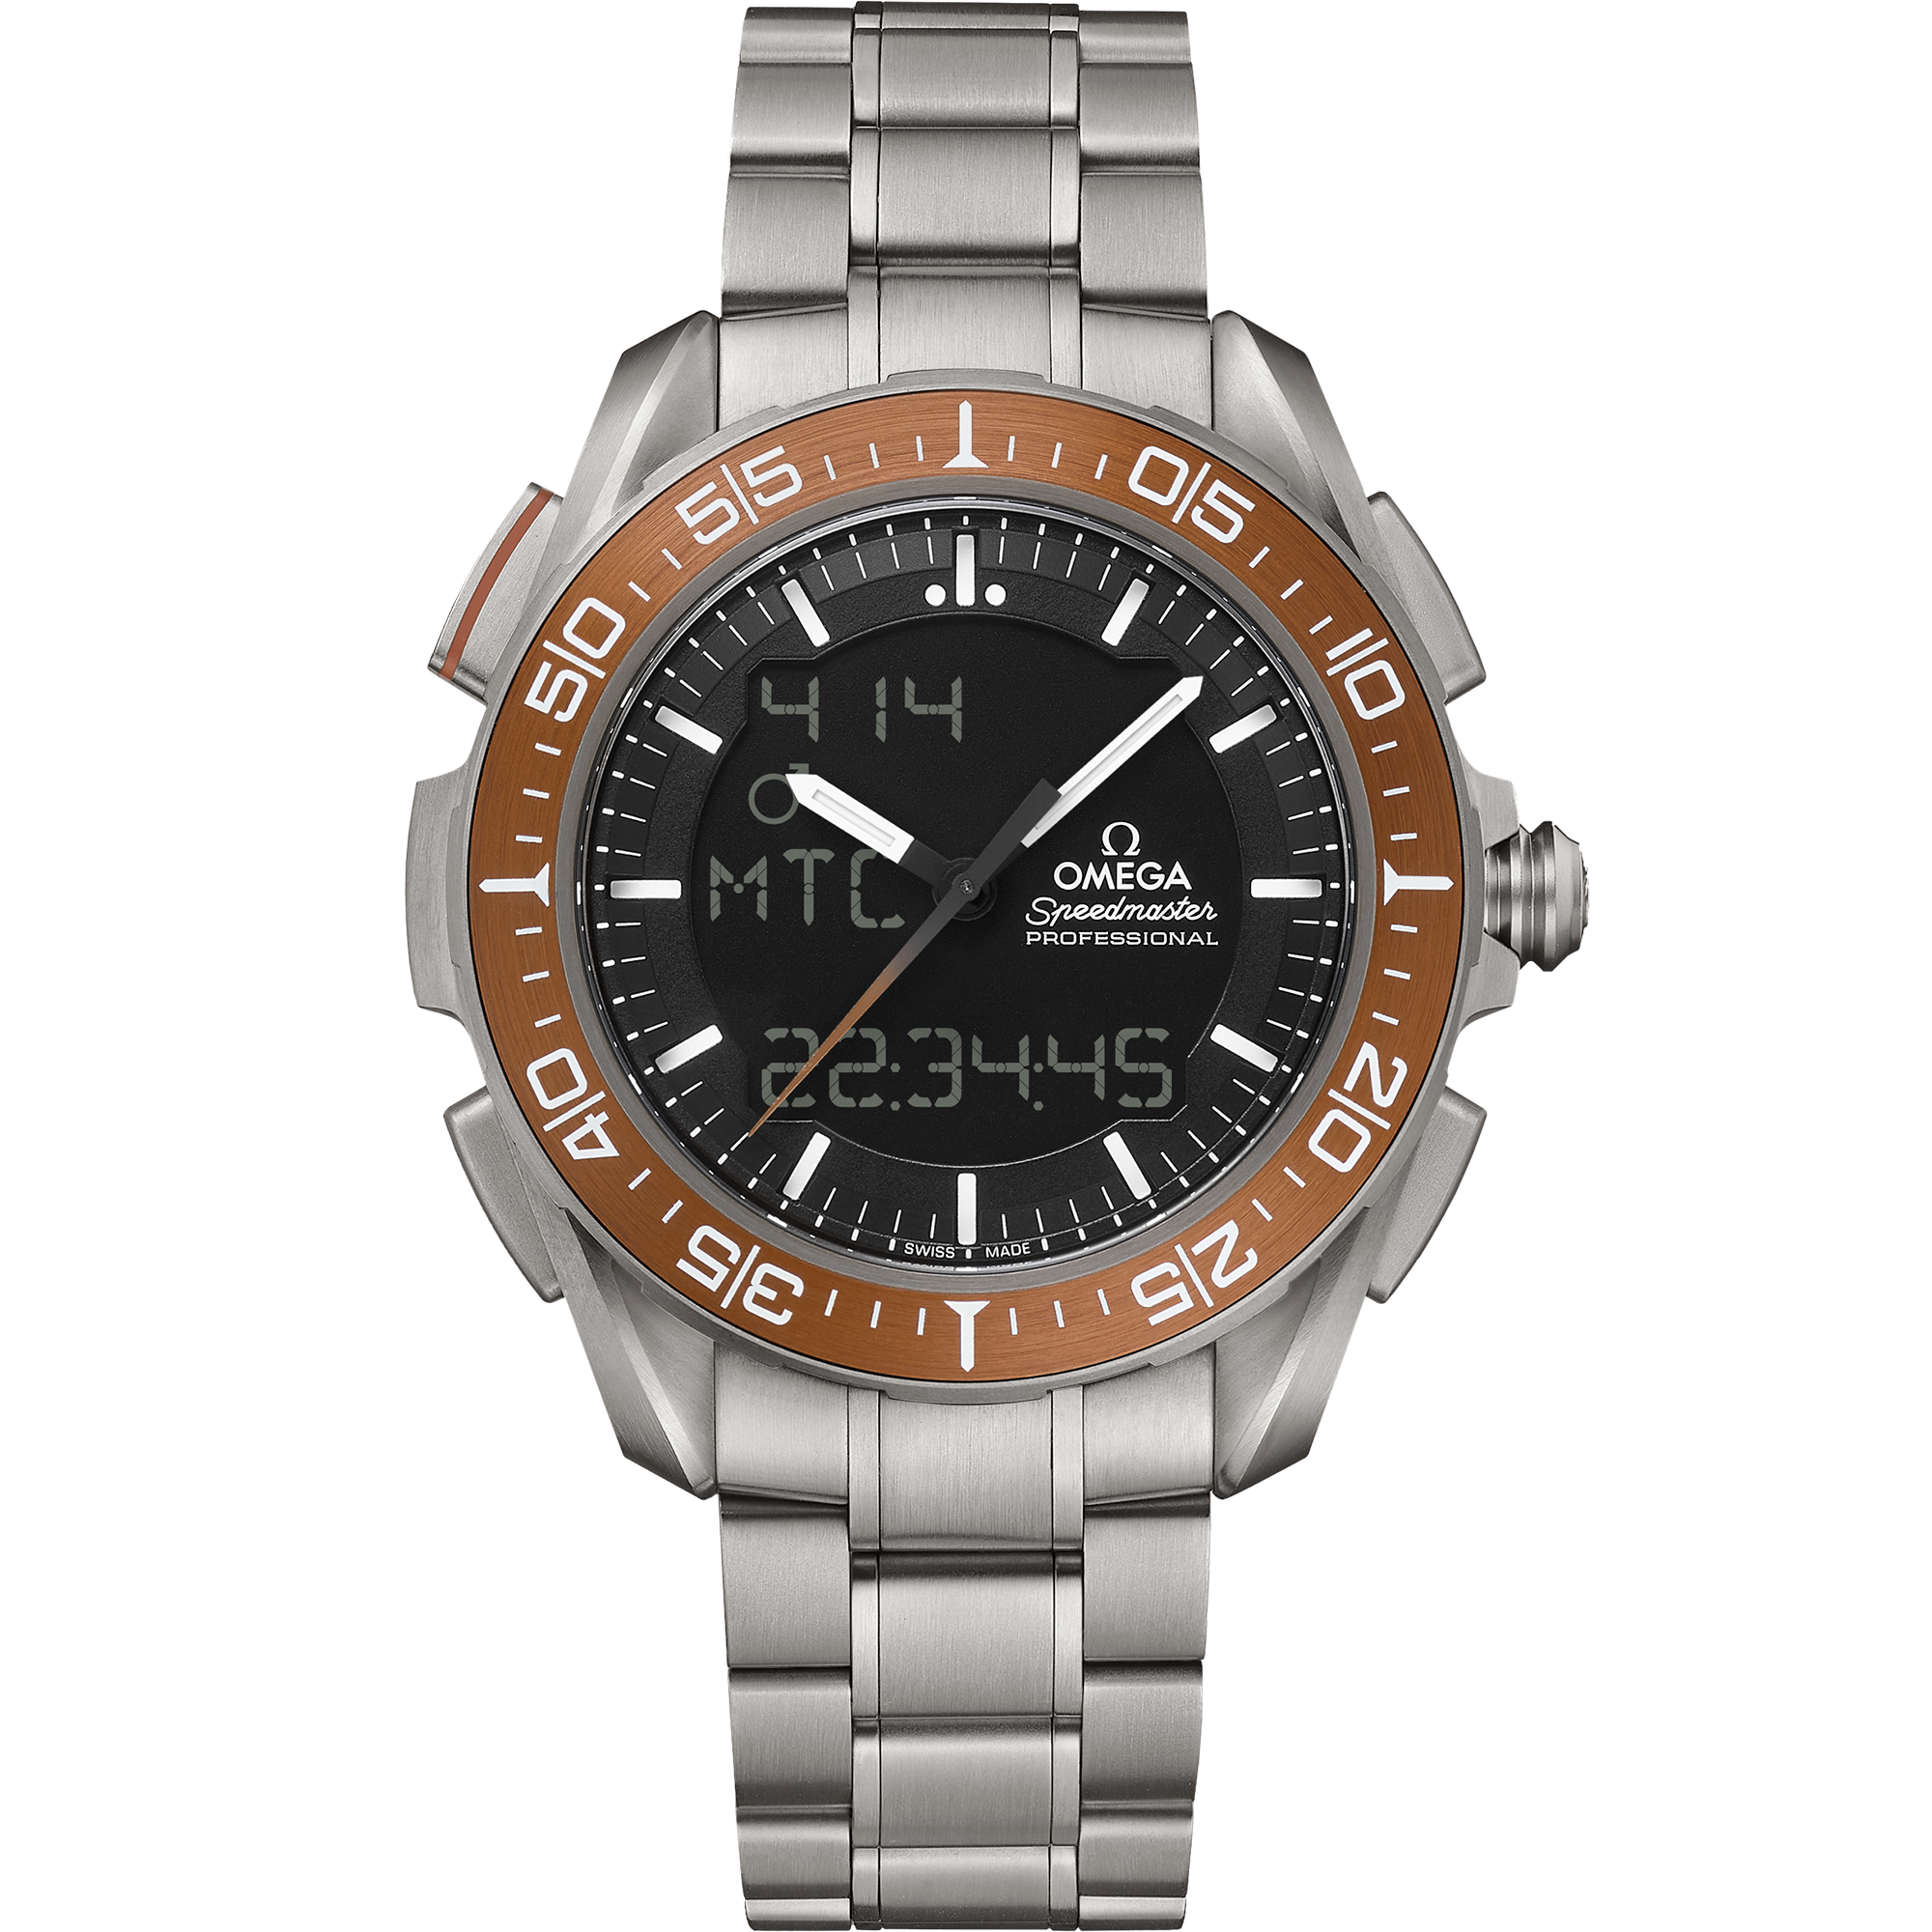 Uhr mit Schwarz Zifferblatt auf Titan Gehäuse mit Titanband bracelet - Speedmaster X-33 Marstimer 45 mm, Titan mit Titanband - 318.90.45.79.01.003